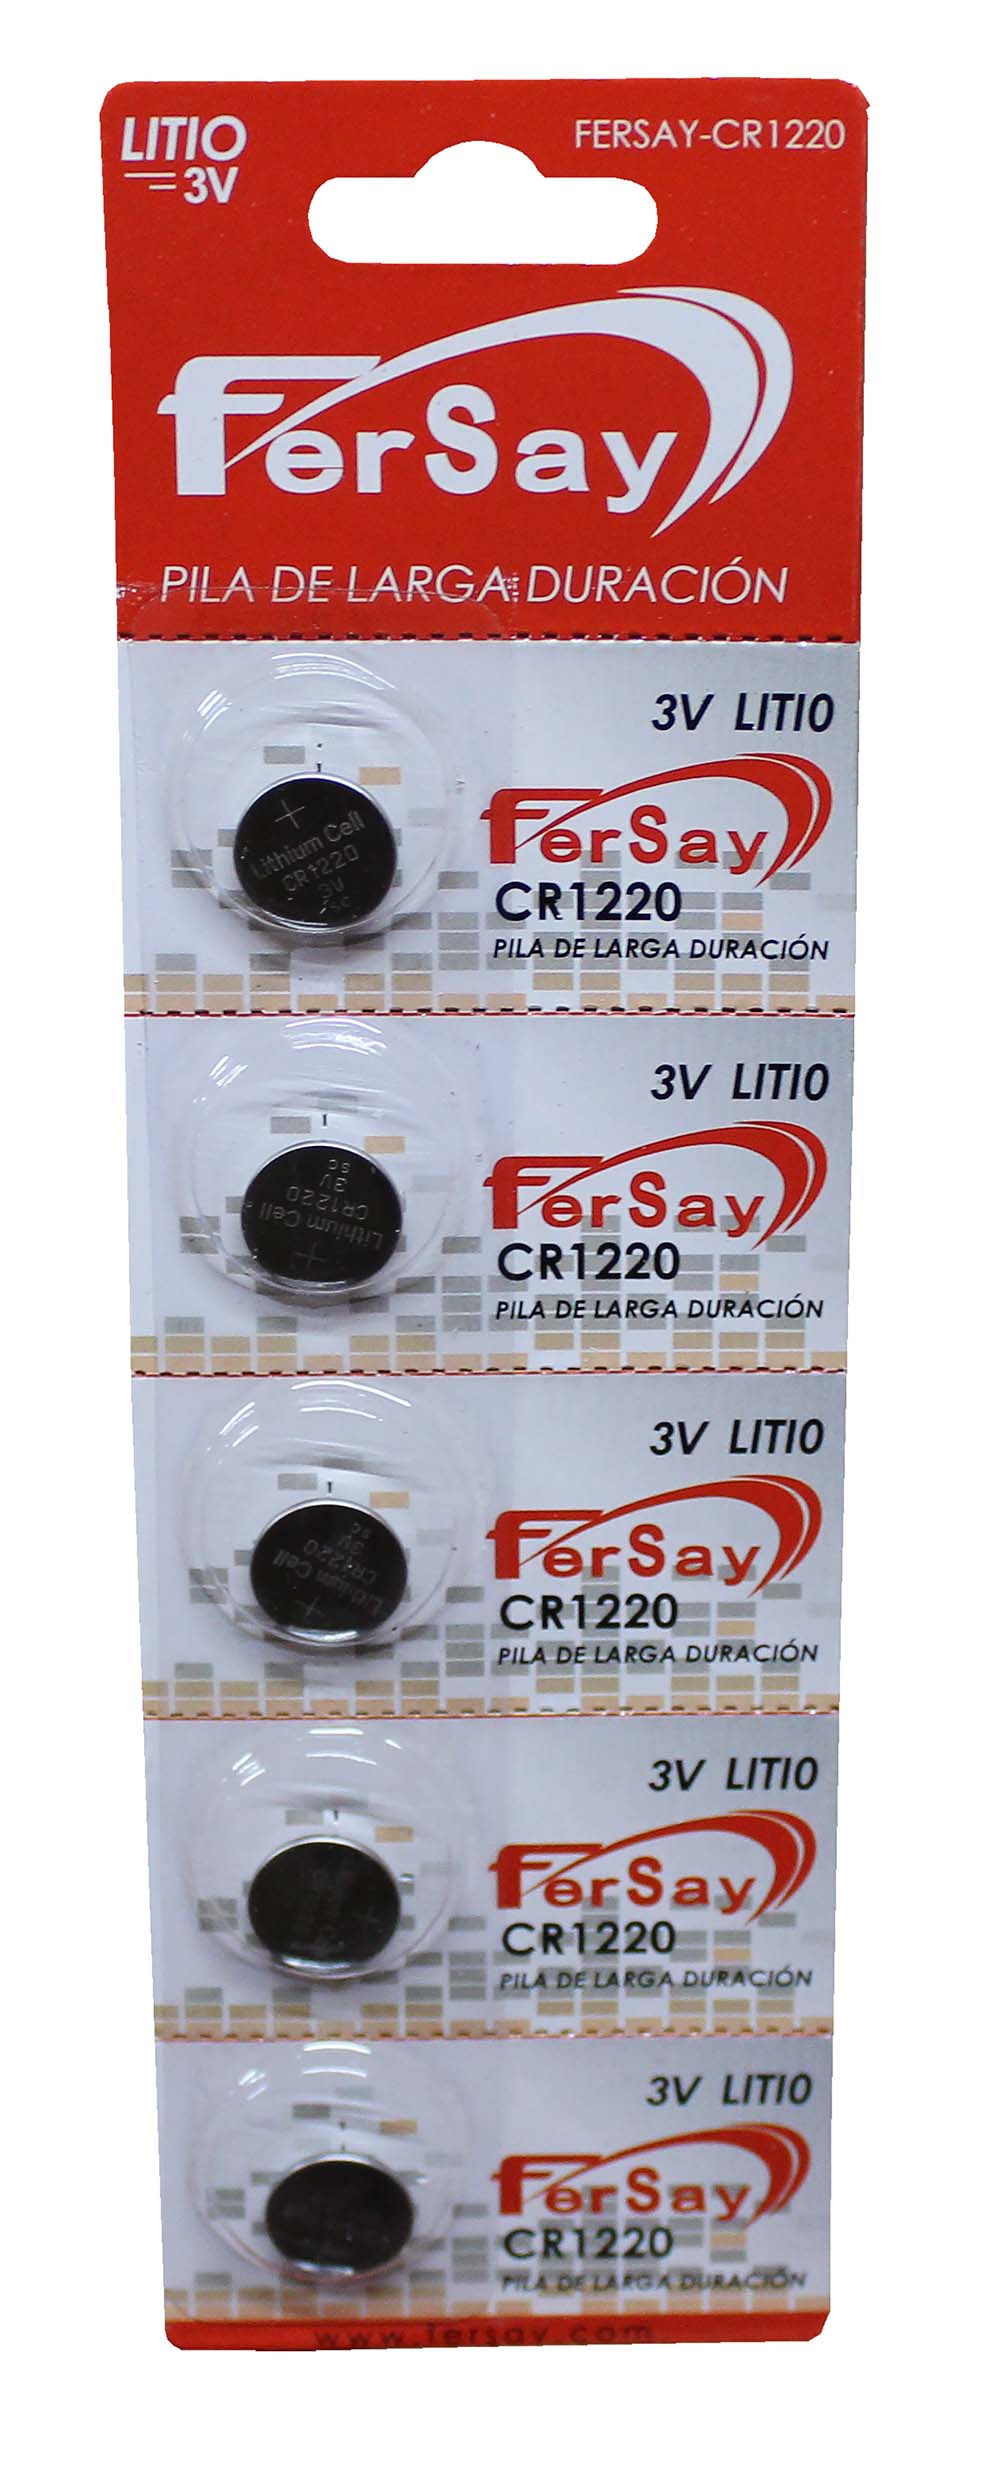 Pila botón formato CR1220 Fersay. - FERSAYCR1220 - FERSAY